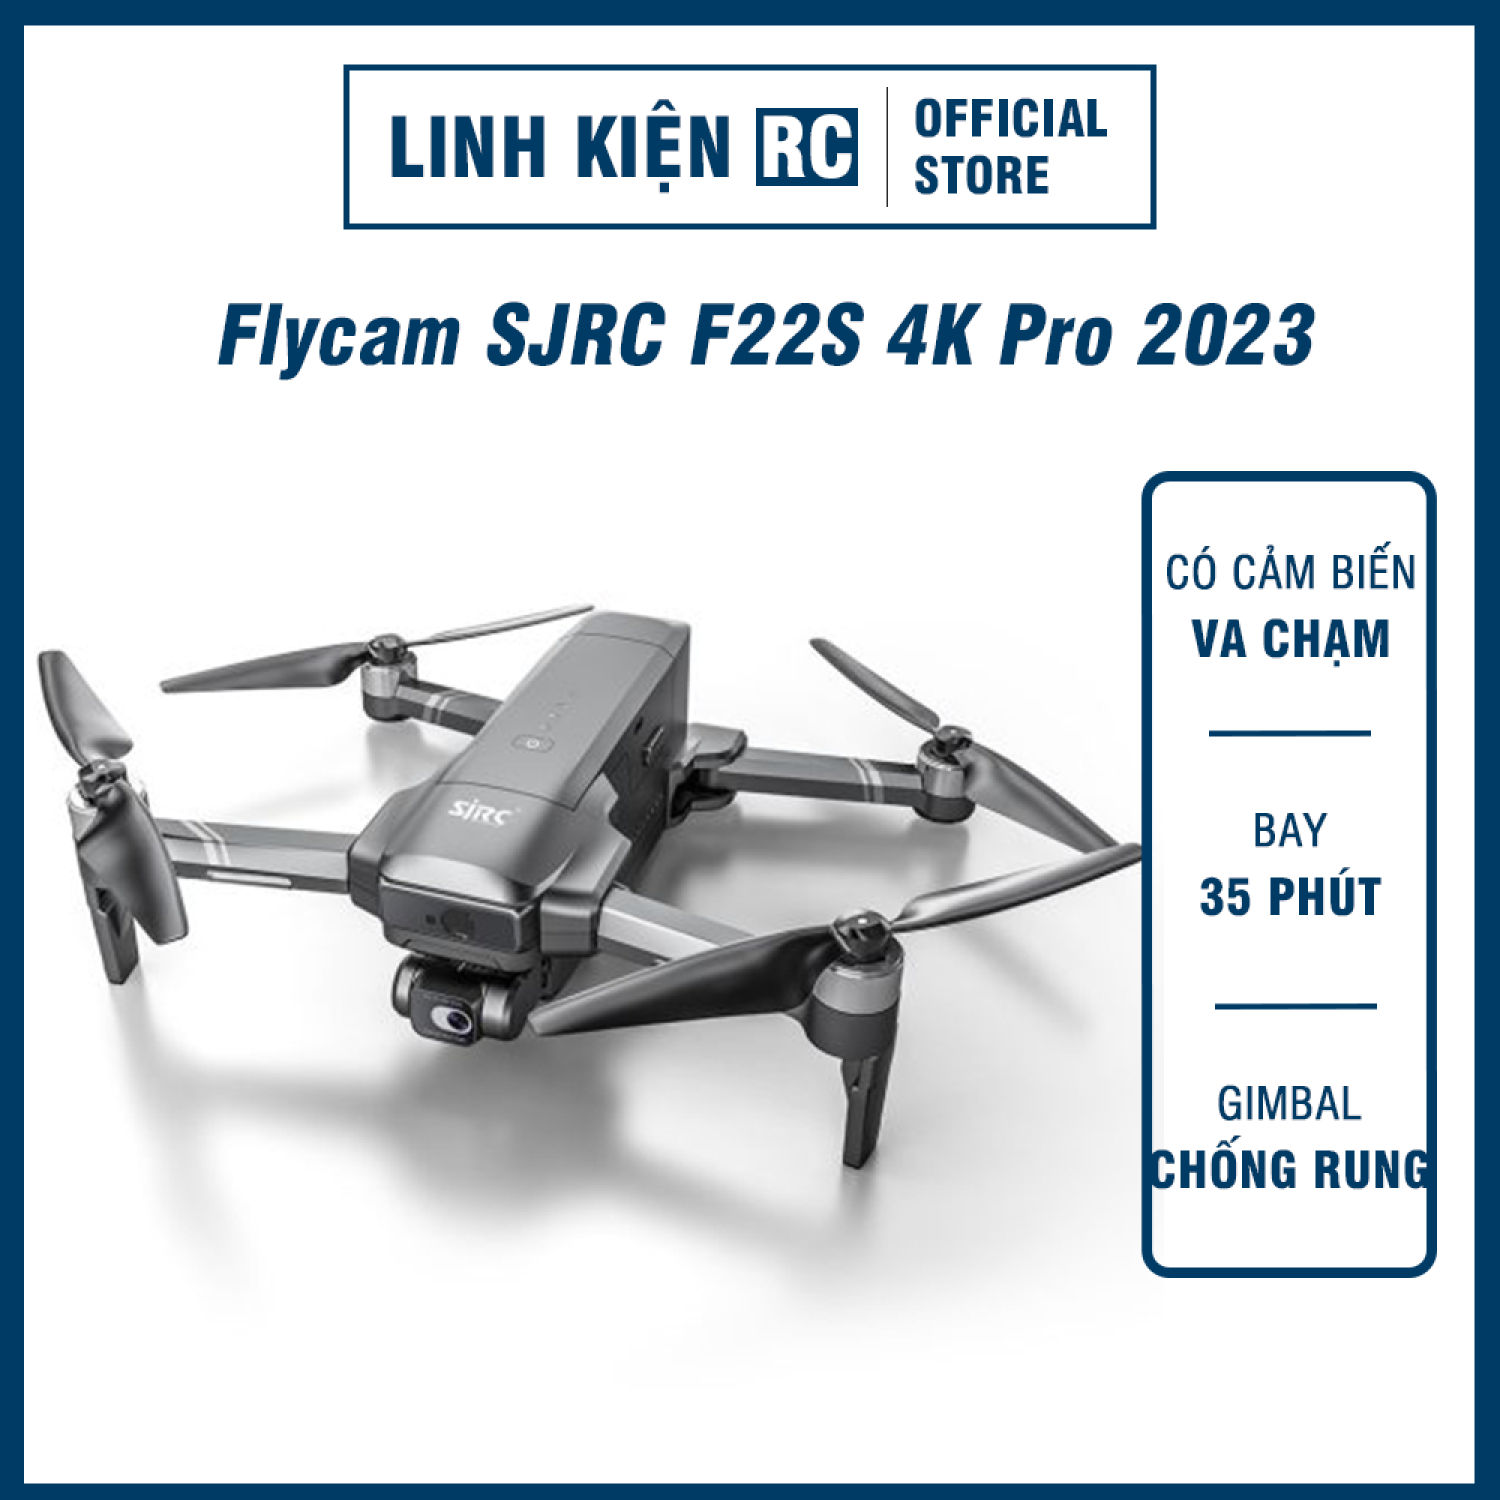 Flycam SJRC F22S 4K Pro 2023 Mới Nhất - Tốt Nhất Phân Khúc Tầm Trung Giá Rẻ Cảm Biến Va Chạm – Bay Tối Đa 3.5km - 35p